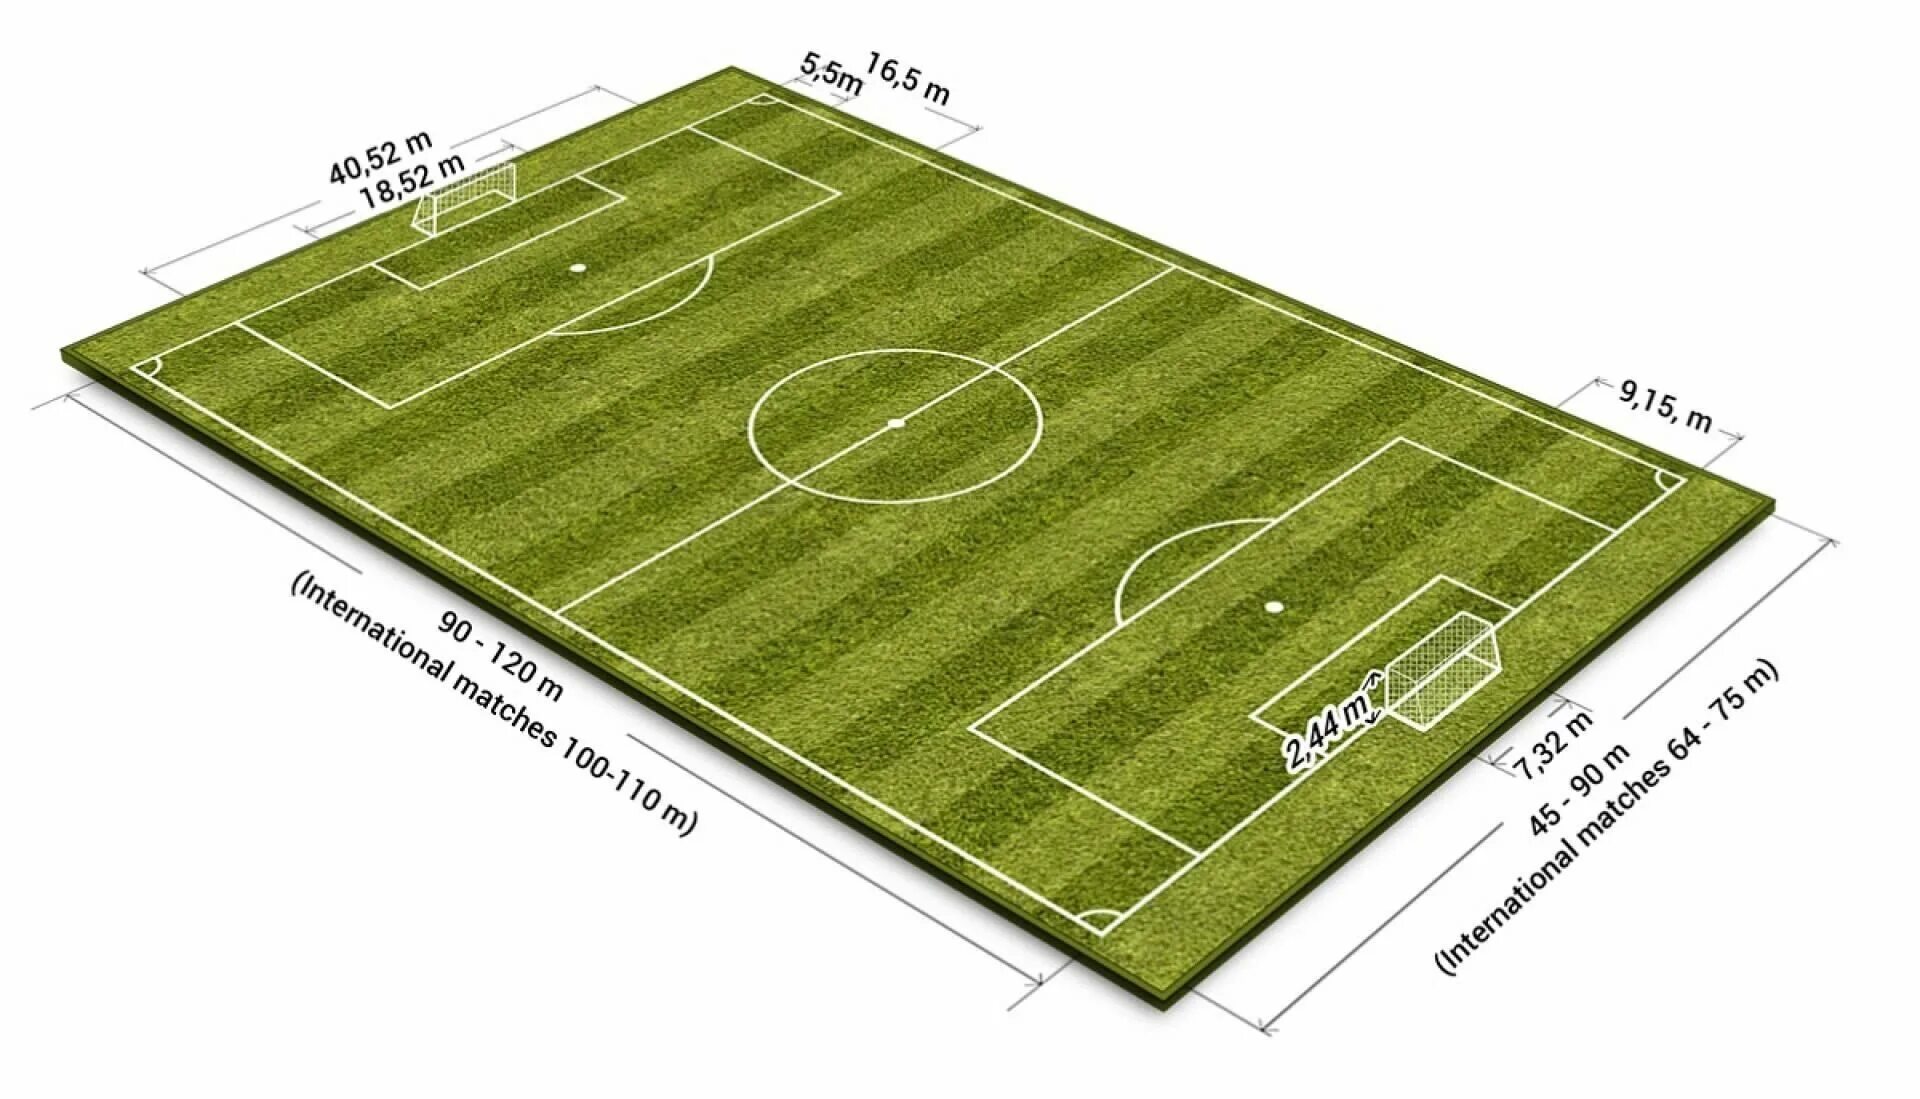 Длина поля 130 ширина. Площадь футбольного поля м2 стандарт. Разметка футбольного поля 68х105. Стандарт футбольного поля ФИФА. Размер футбольного поля FIFA.